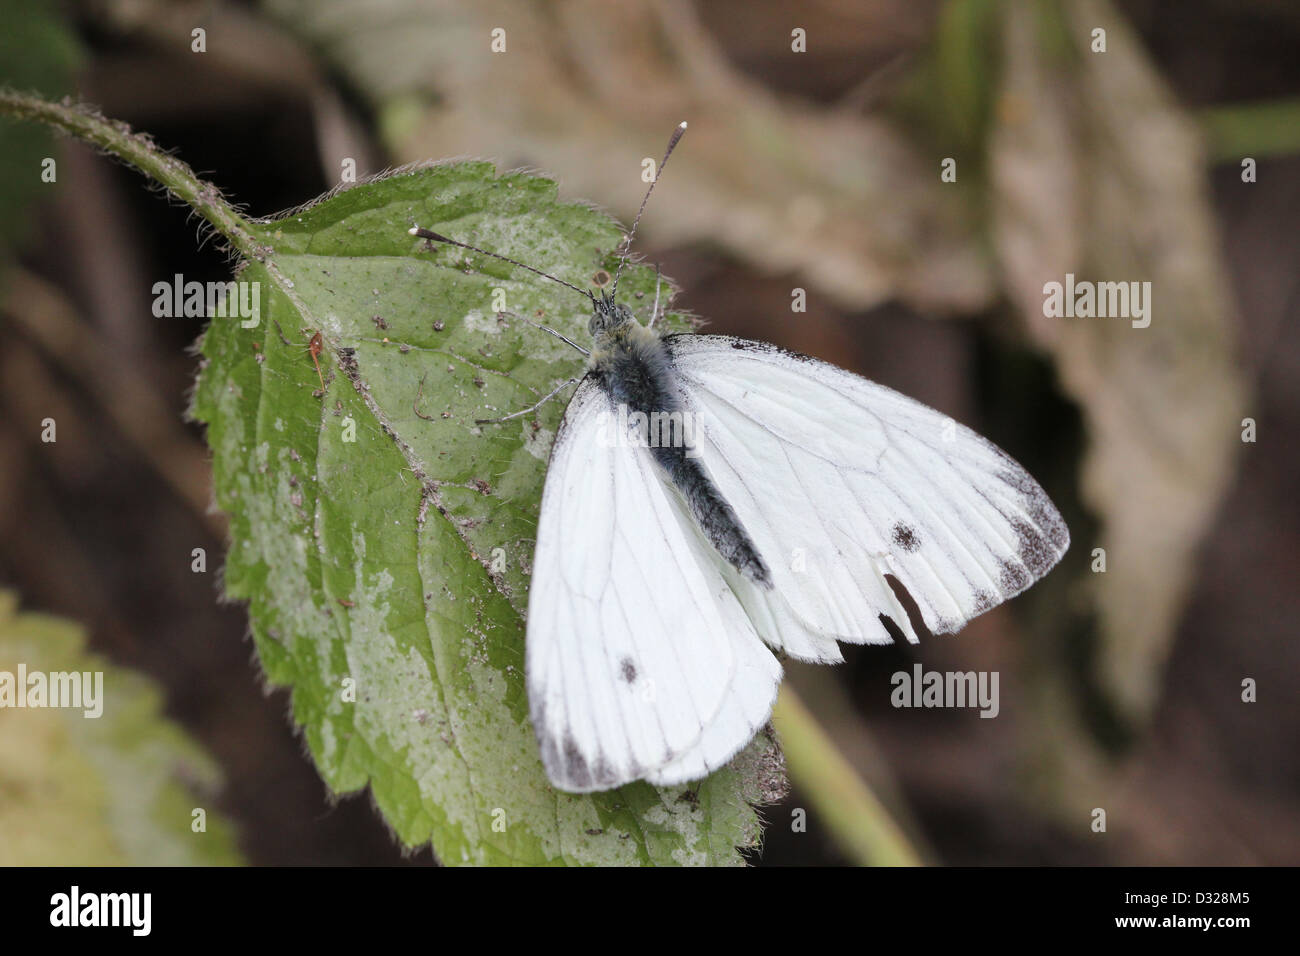 Grün-veined weiß (Pieris Napi) Schmetterling auf Nahrungssuche auf einer Blume Stockfoto